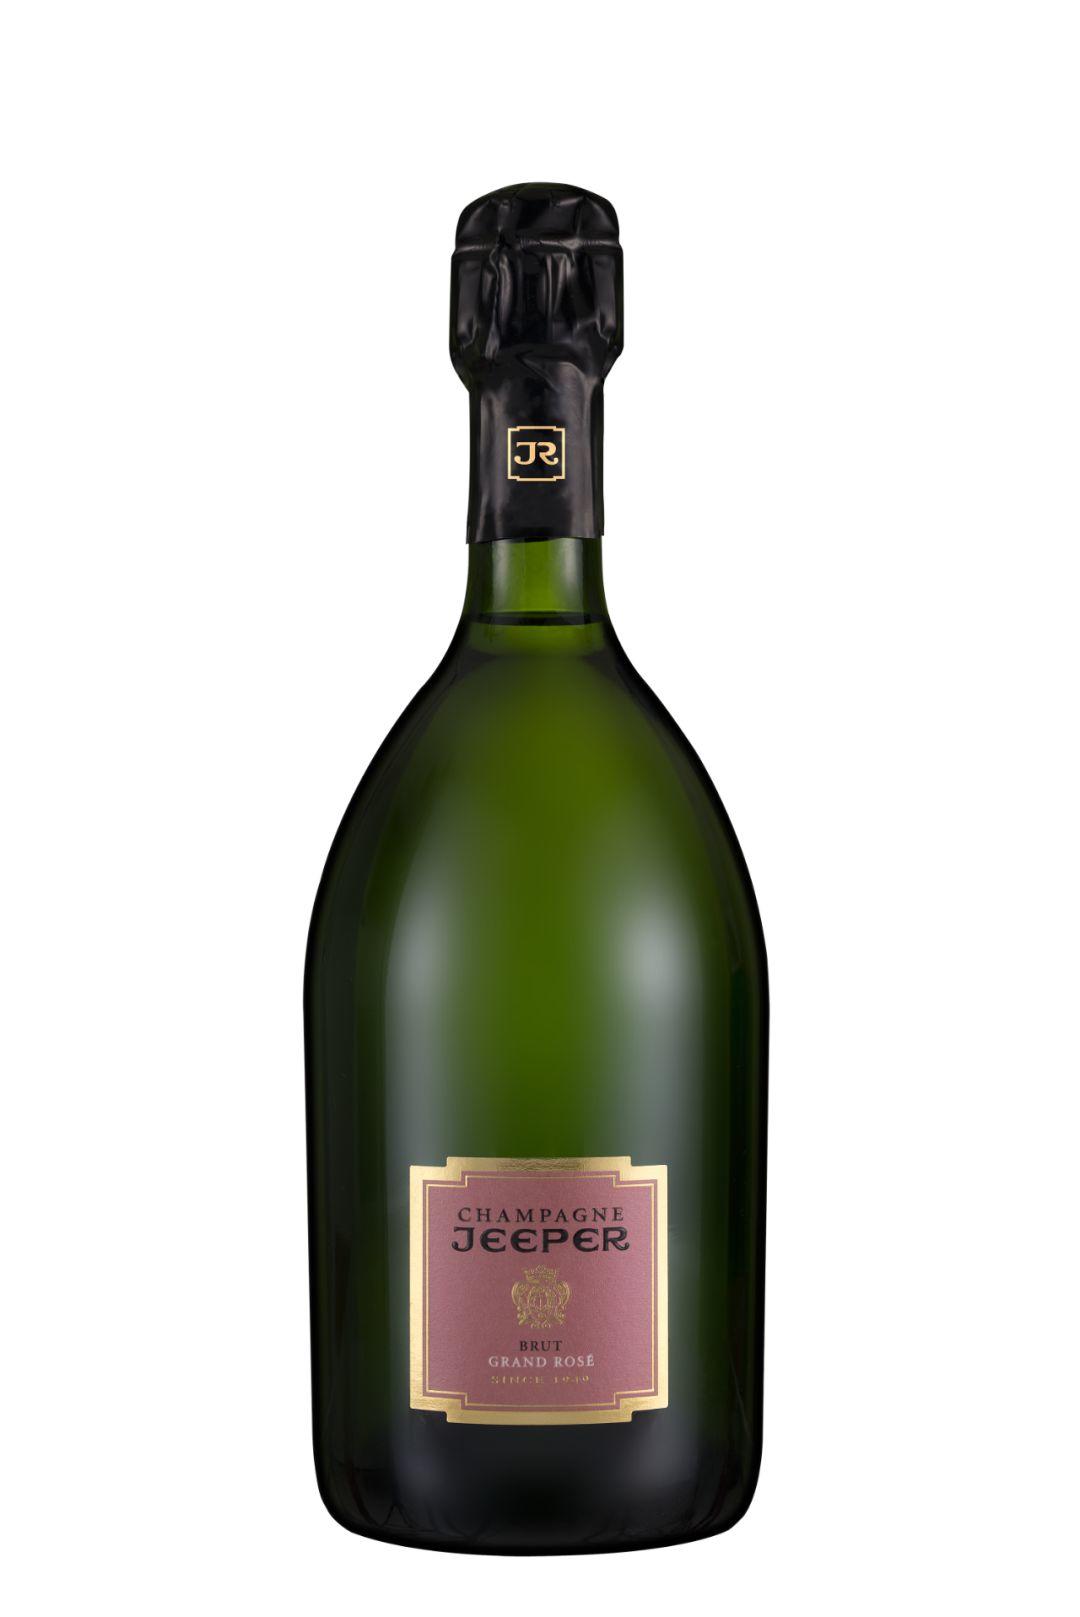 2019 展商介绍 | Champagne Jeeper